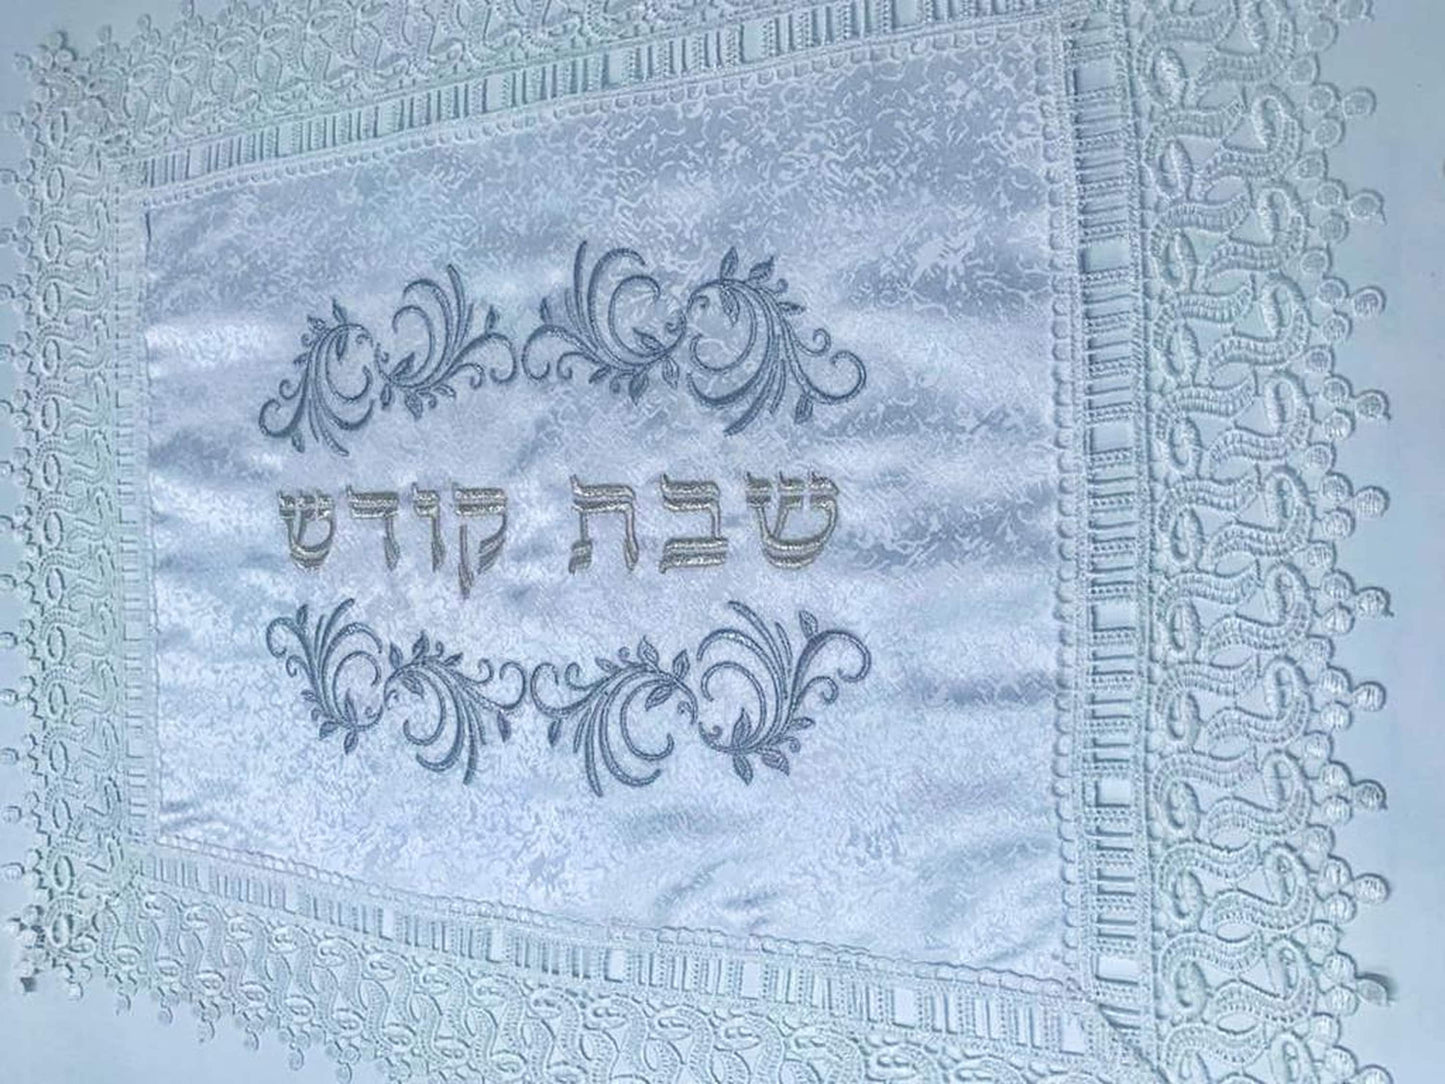 White Linen Challah Cover for Shabbat Table